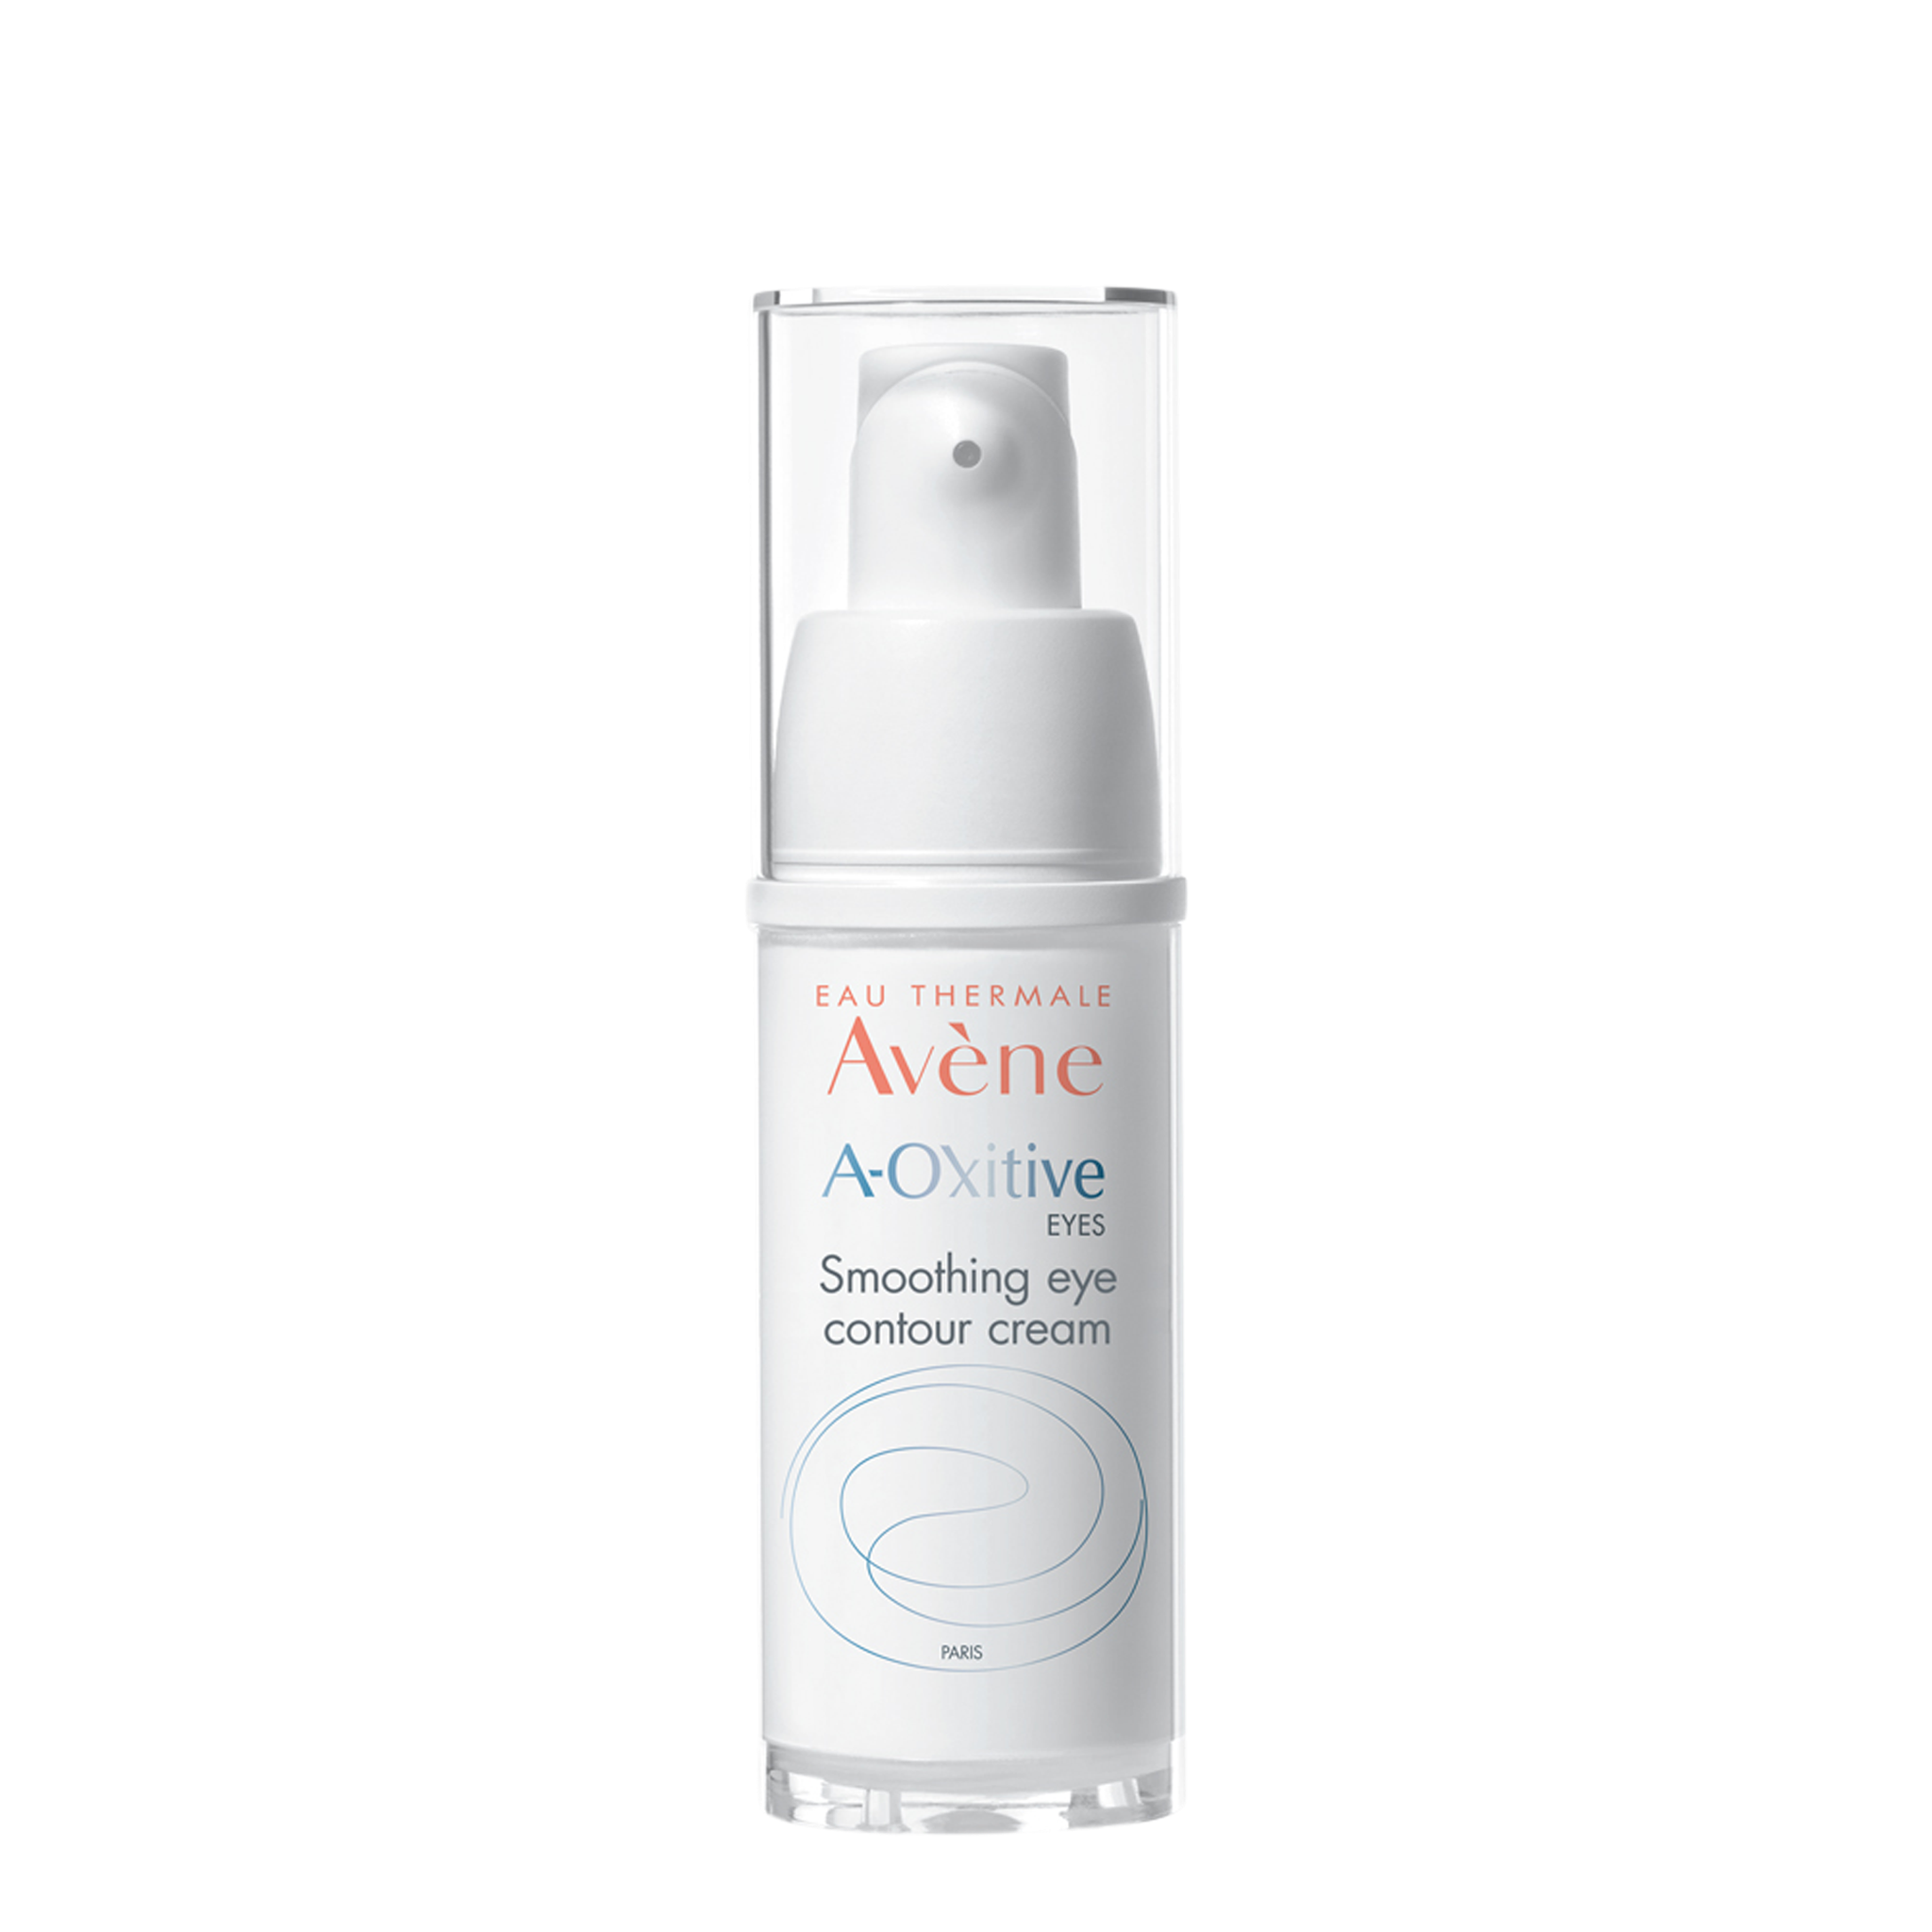 Avène A-Oxitive EYES Smoothing Eye Contour Cream 15ml - Vitamin A Eye Cream